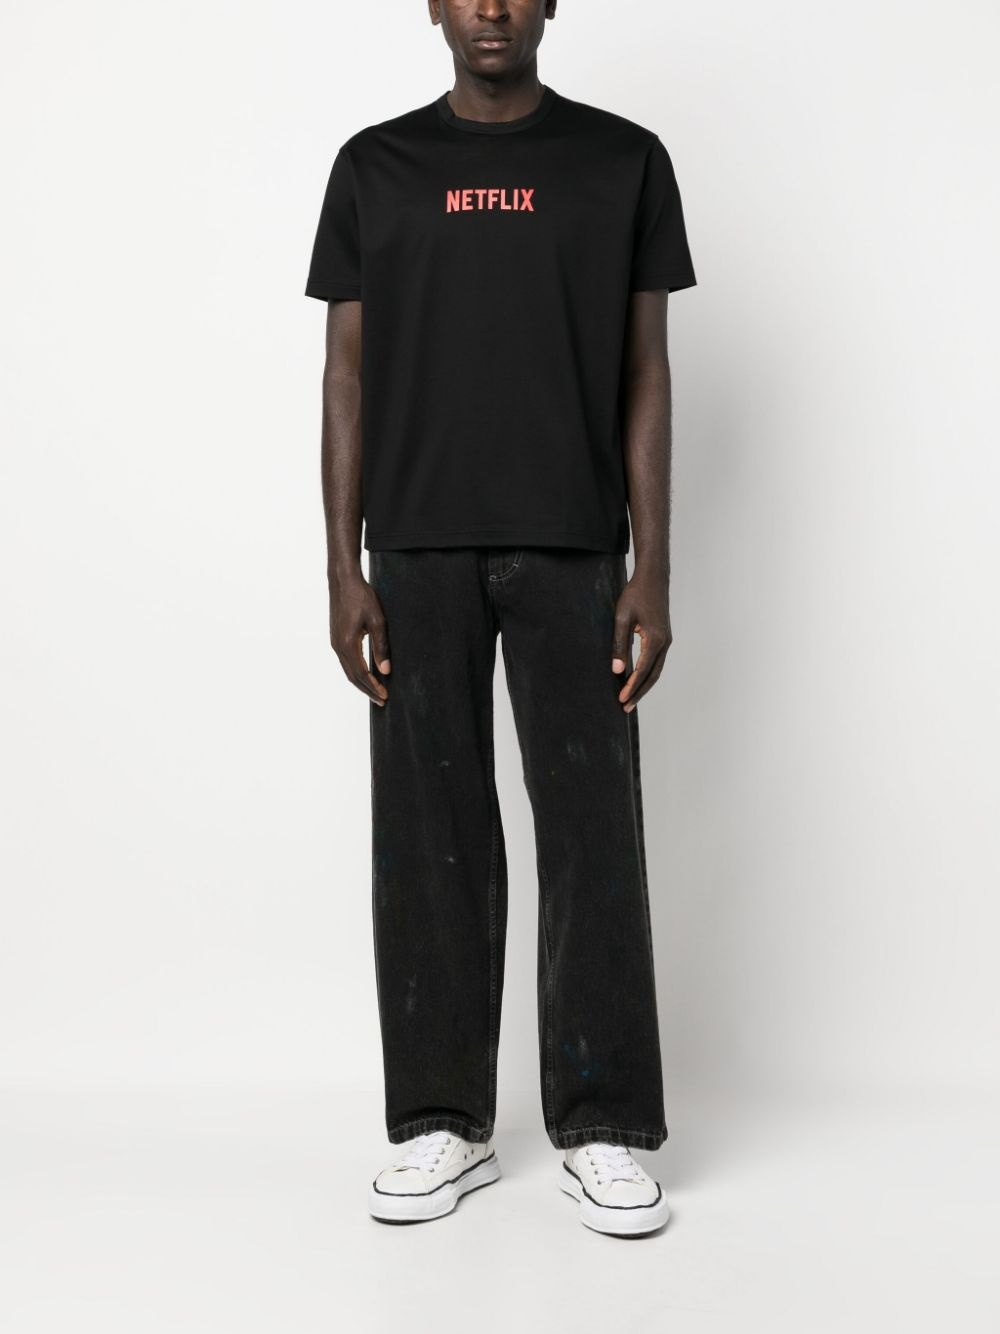 Netflix-print cotton T-shirt - 2